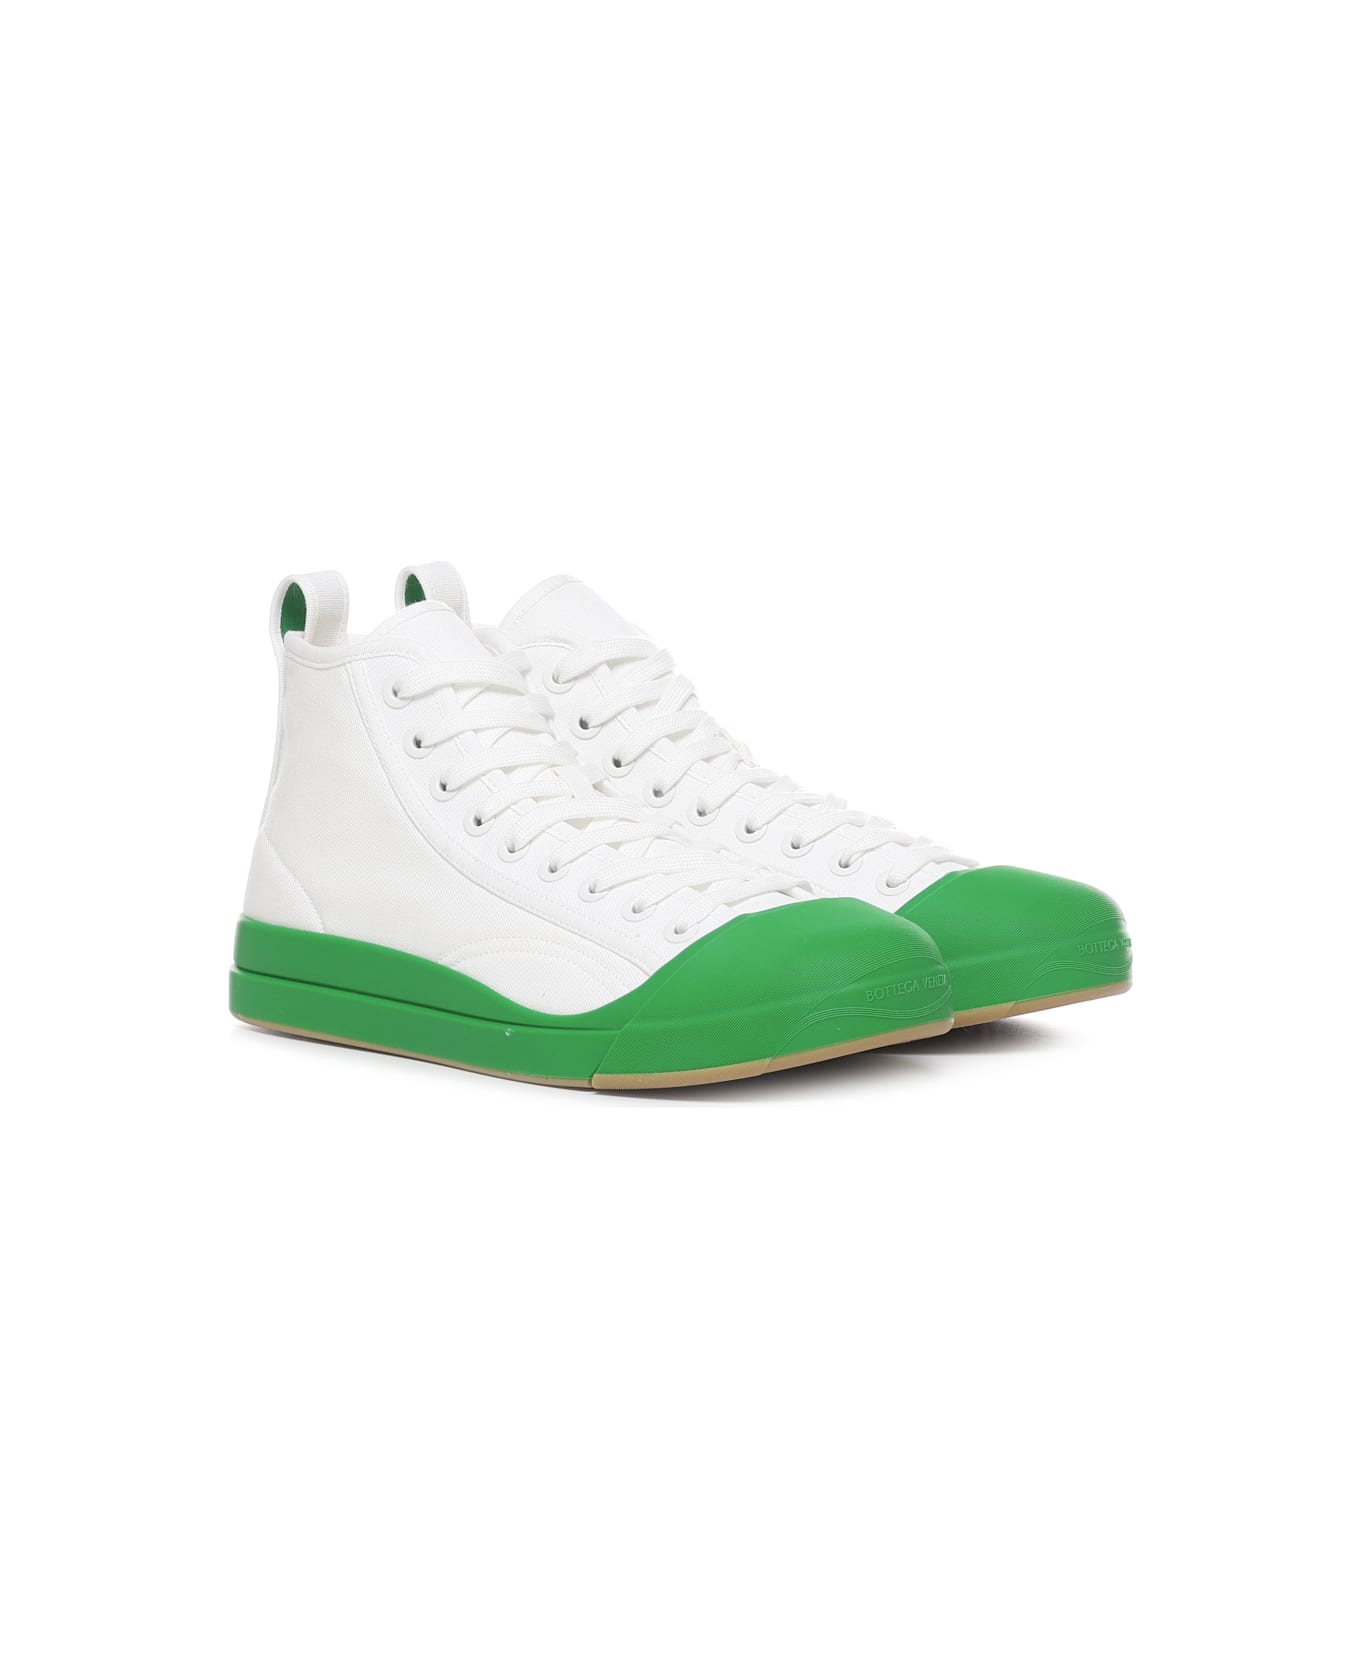 Bottega Veneta Vulcan Sneakers - White, green スニーカー